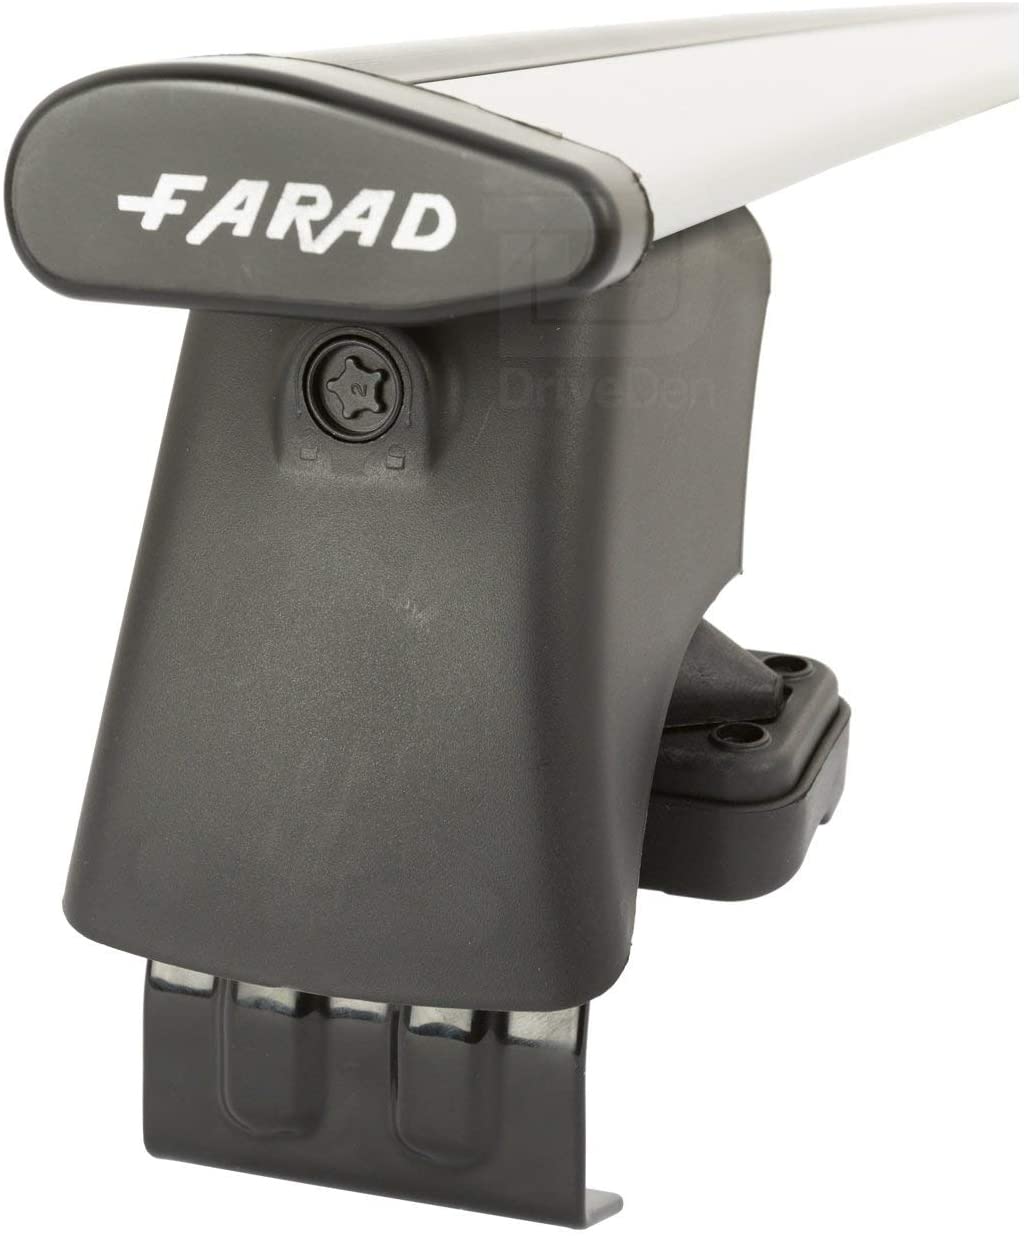 FARAD-Kit H2 per barre portatutto - Hyundai I 40 2012> (senza corrimano)